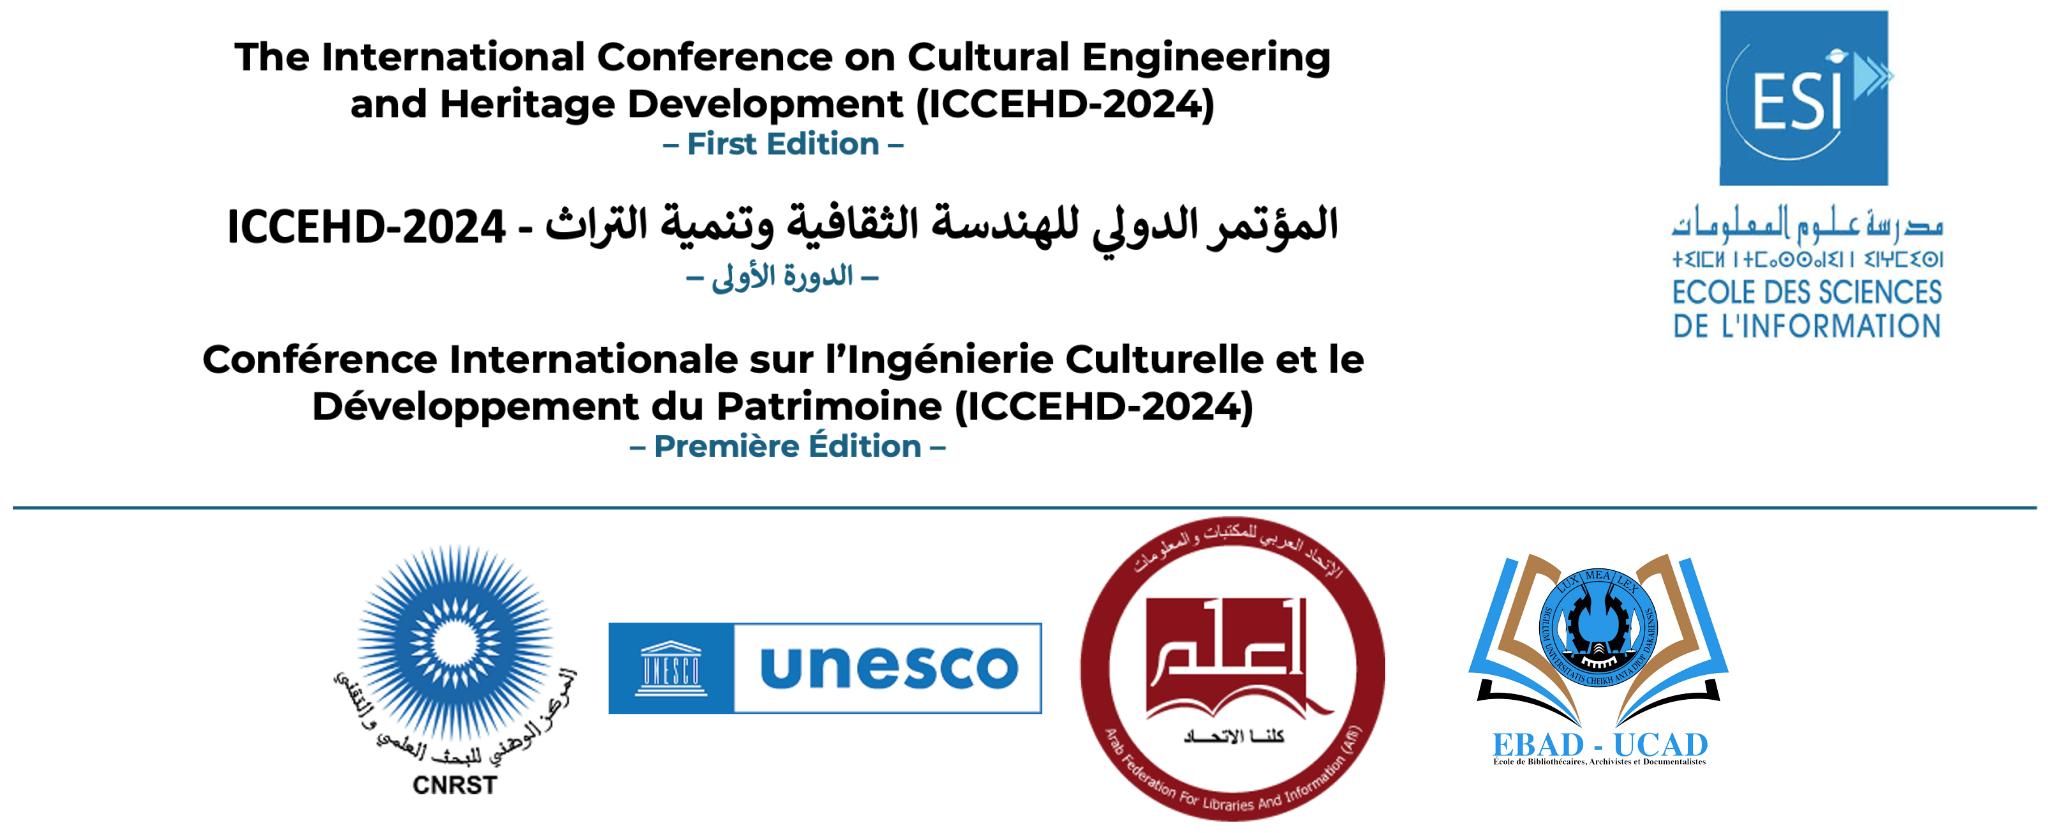 Conférence Internationale sur l’Ingénierie Culturelle et le Développement du Patrimoine – Première édition (ICCEHD-2024)